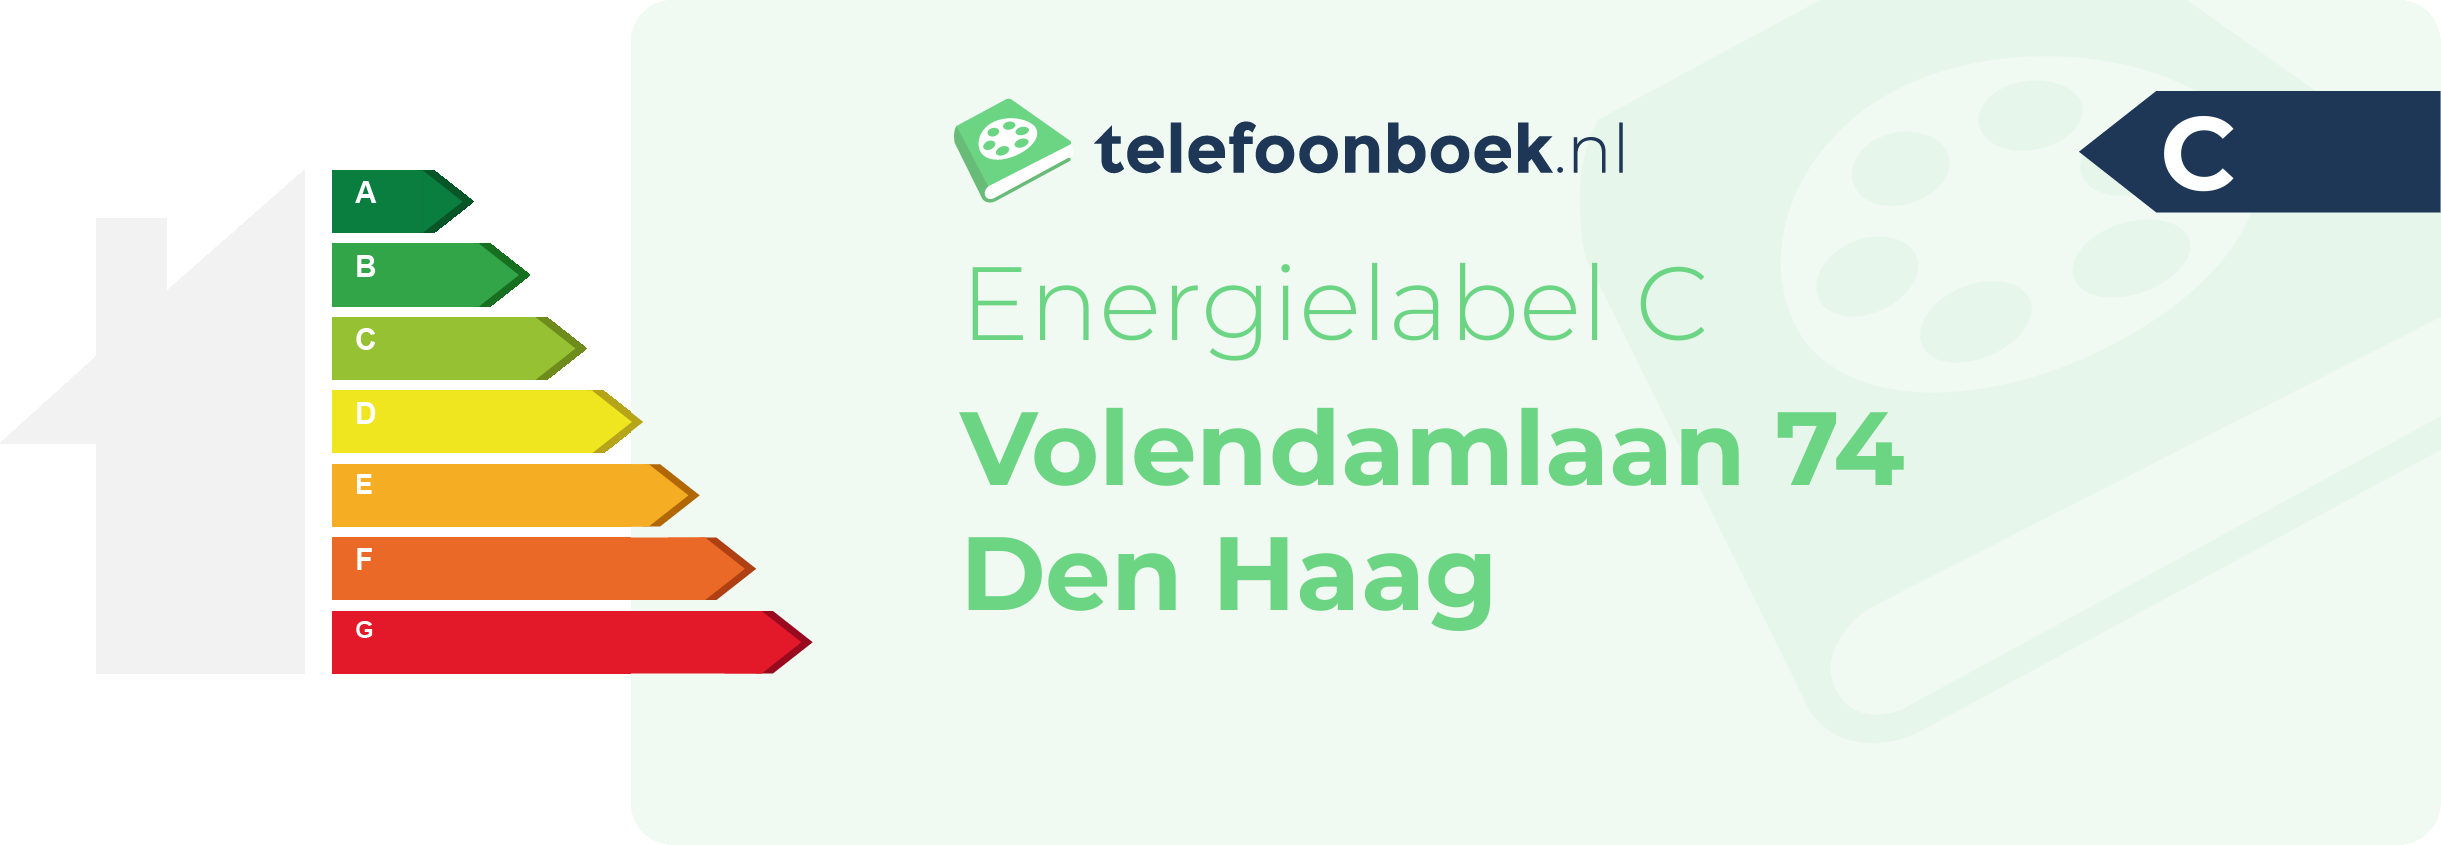 Energielabel Volendamlaan 74 Den Haag